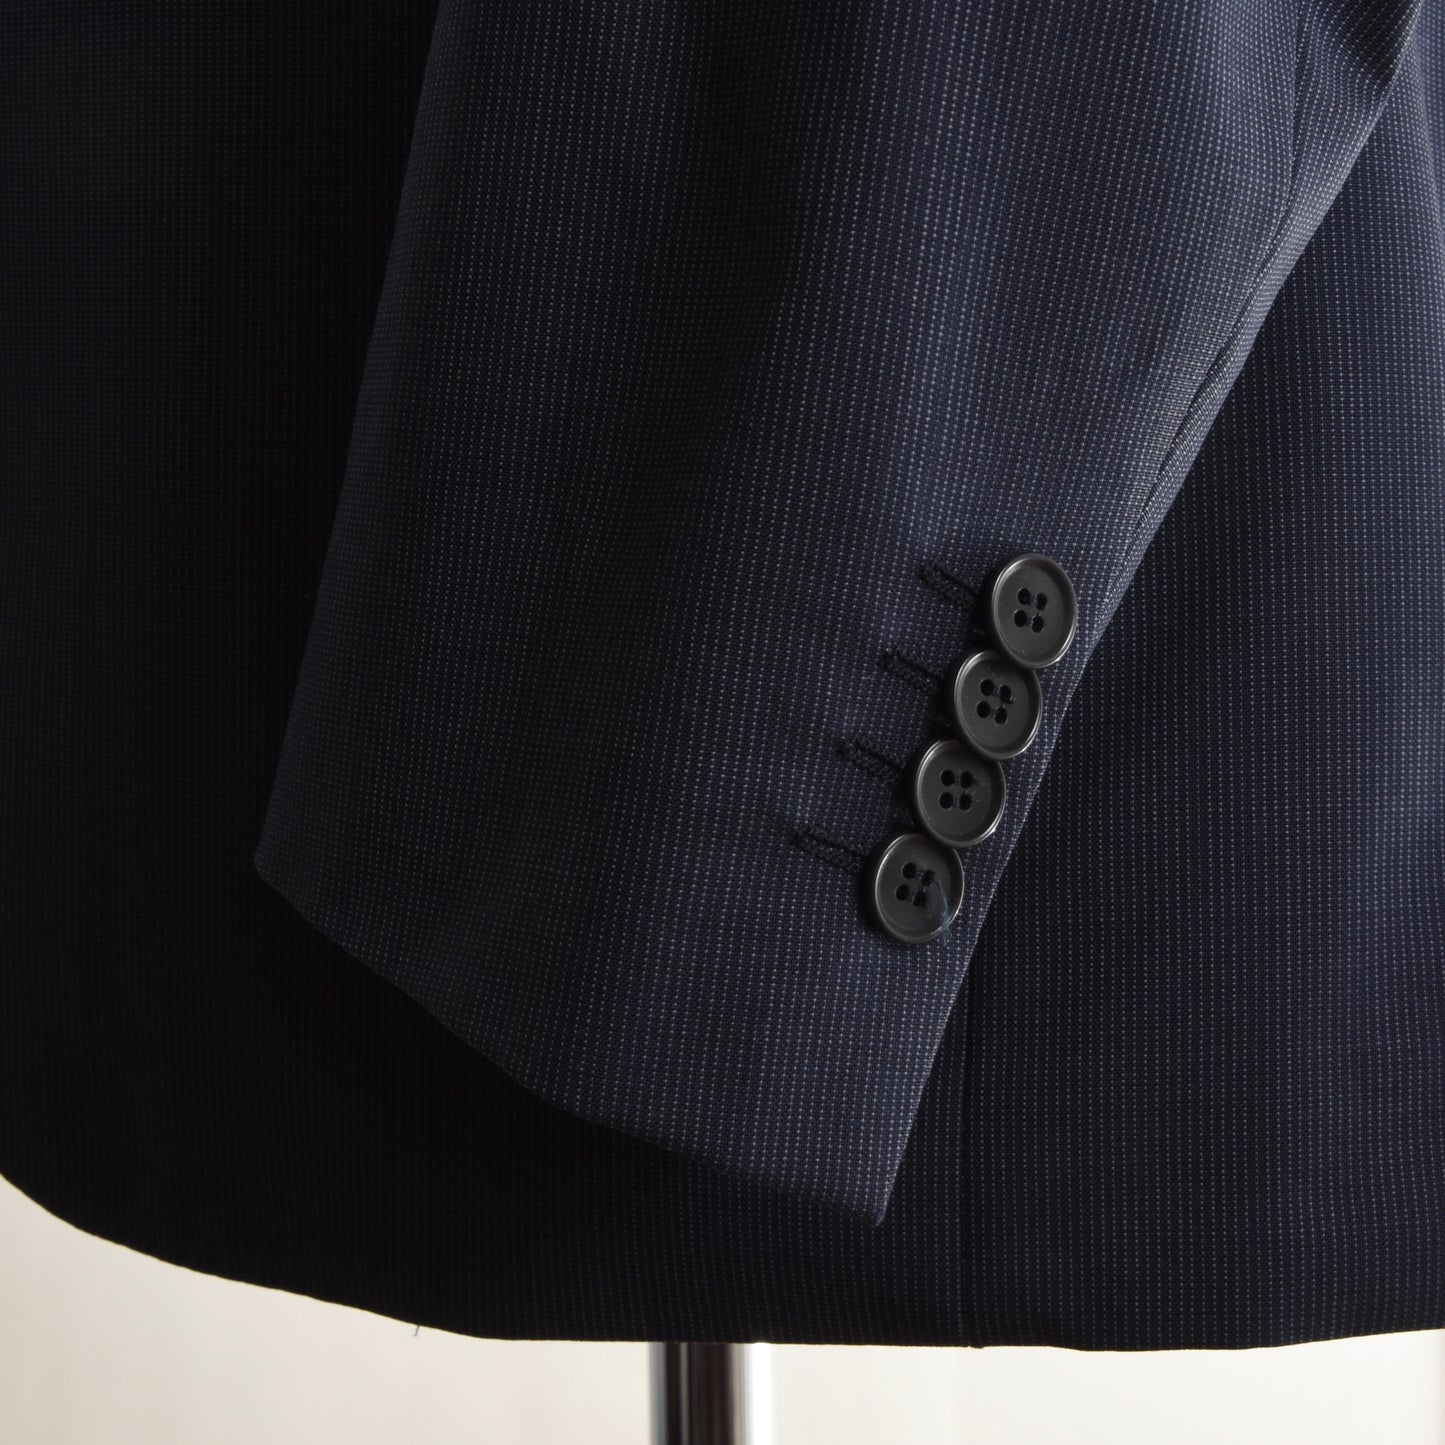 Boggi Milano Wool Suit Size 48 - Navy Stripe